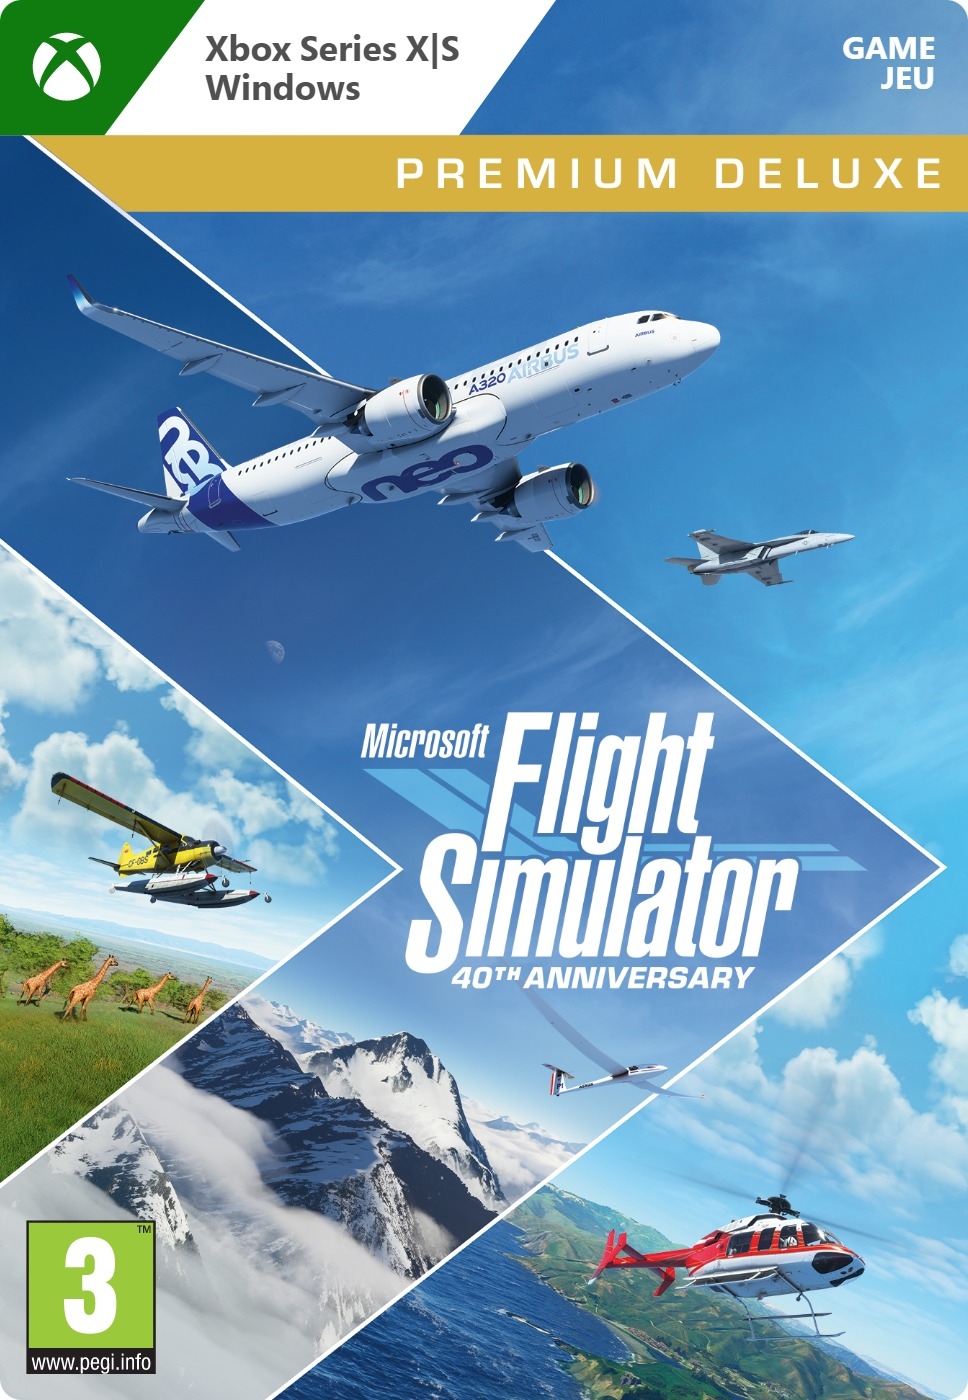 Microsoft Flight Simulator: 40th Anniversary Premium Deluxe Edition - Xbox Series X|S/One/PC